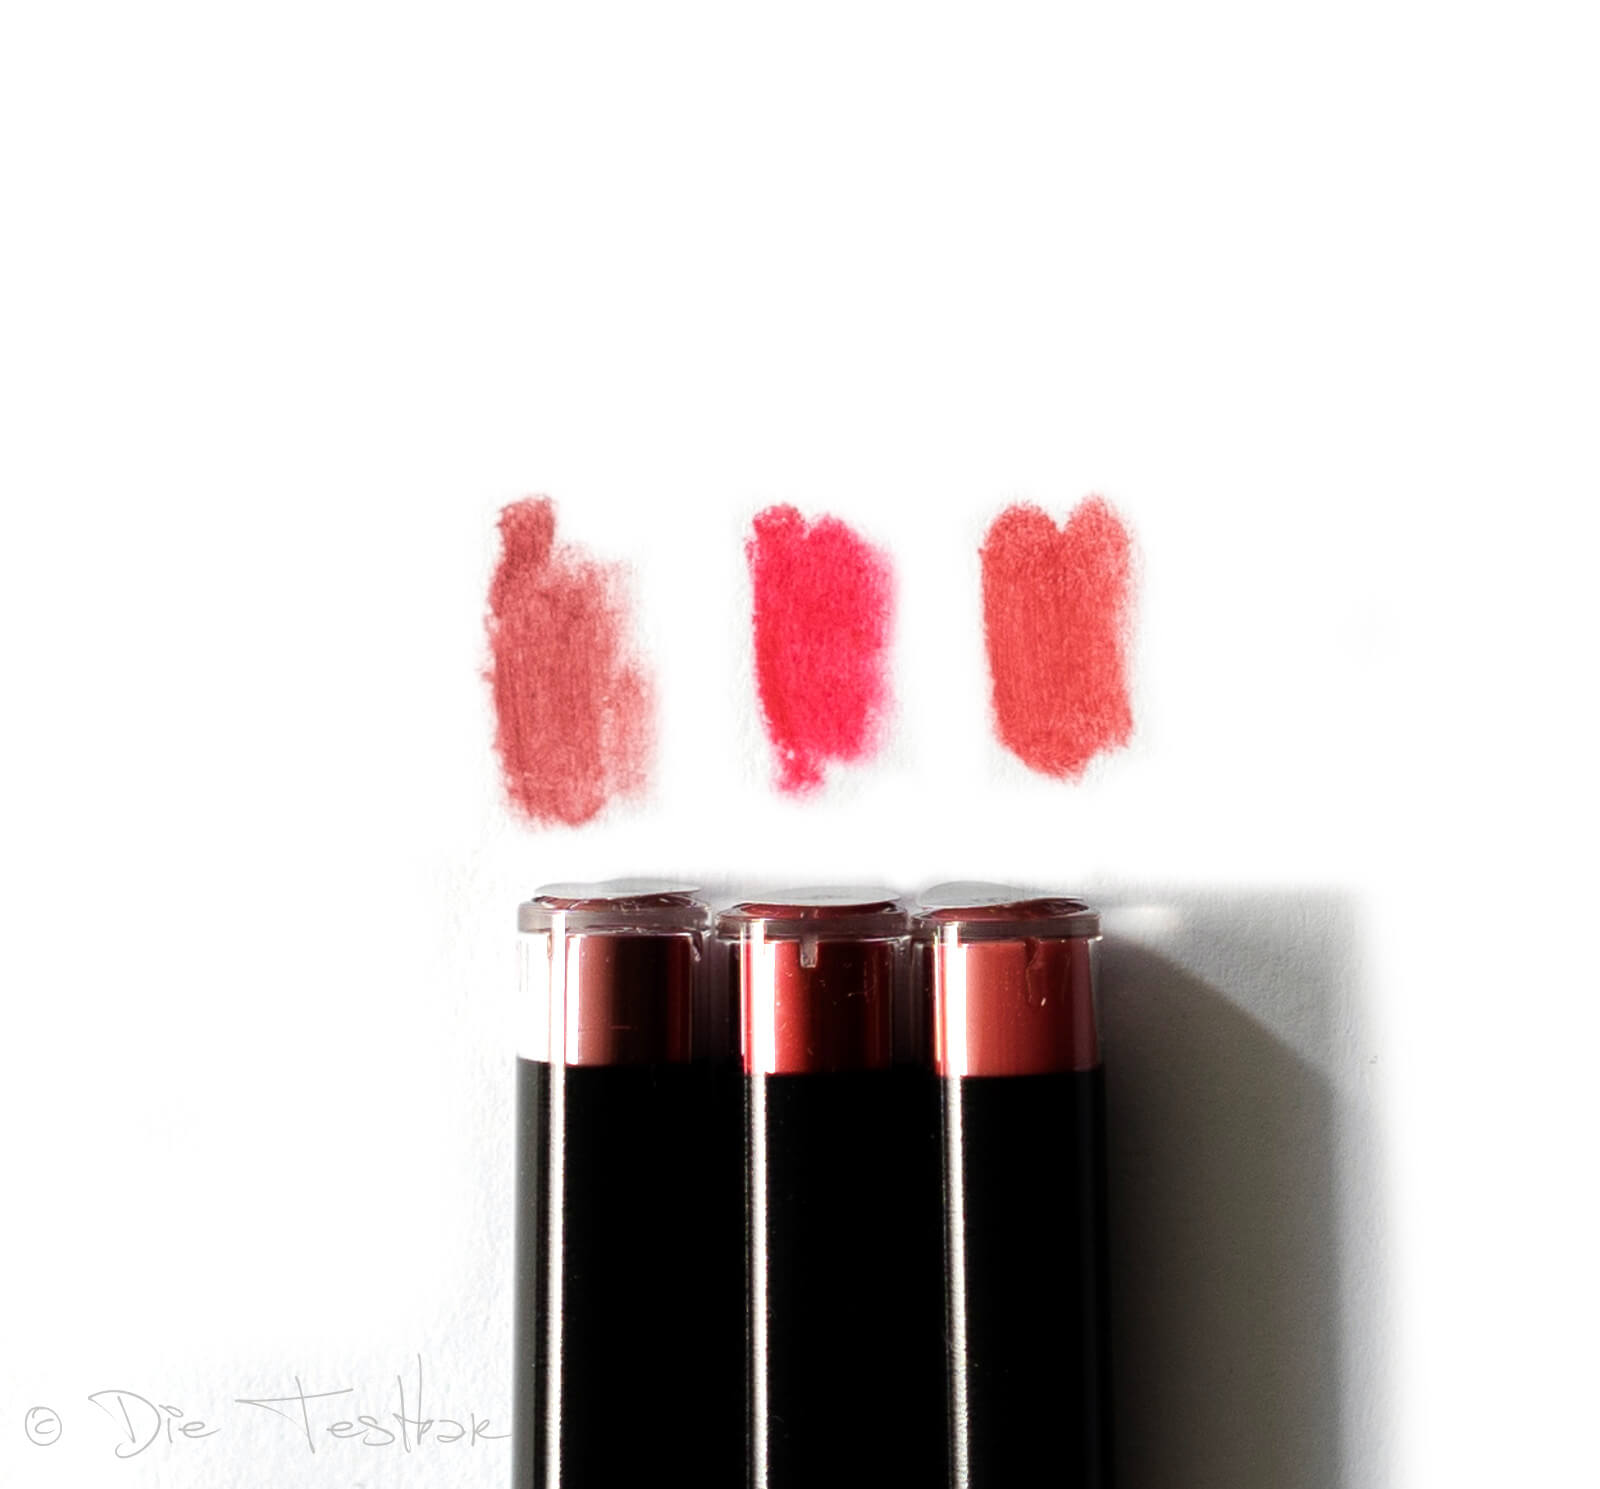 Für wunderschöne Lippen - Hochwertiges Lippen-Make-up vom makeupcoach 22